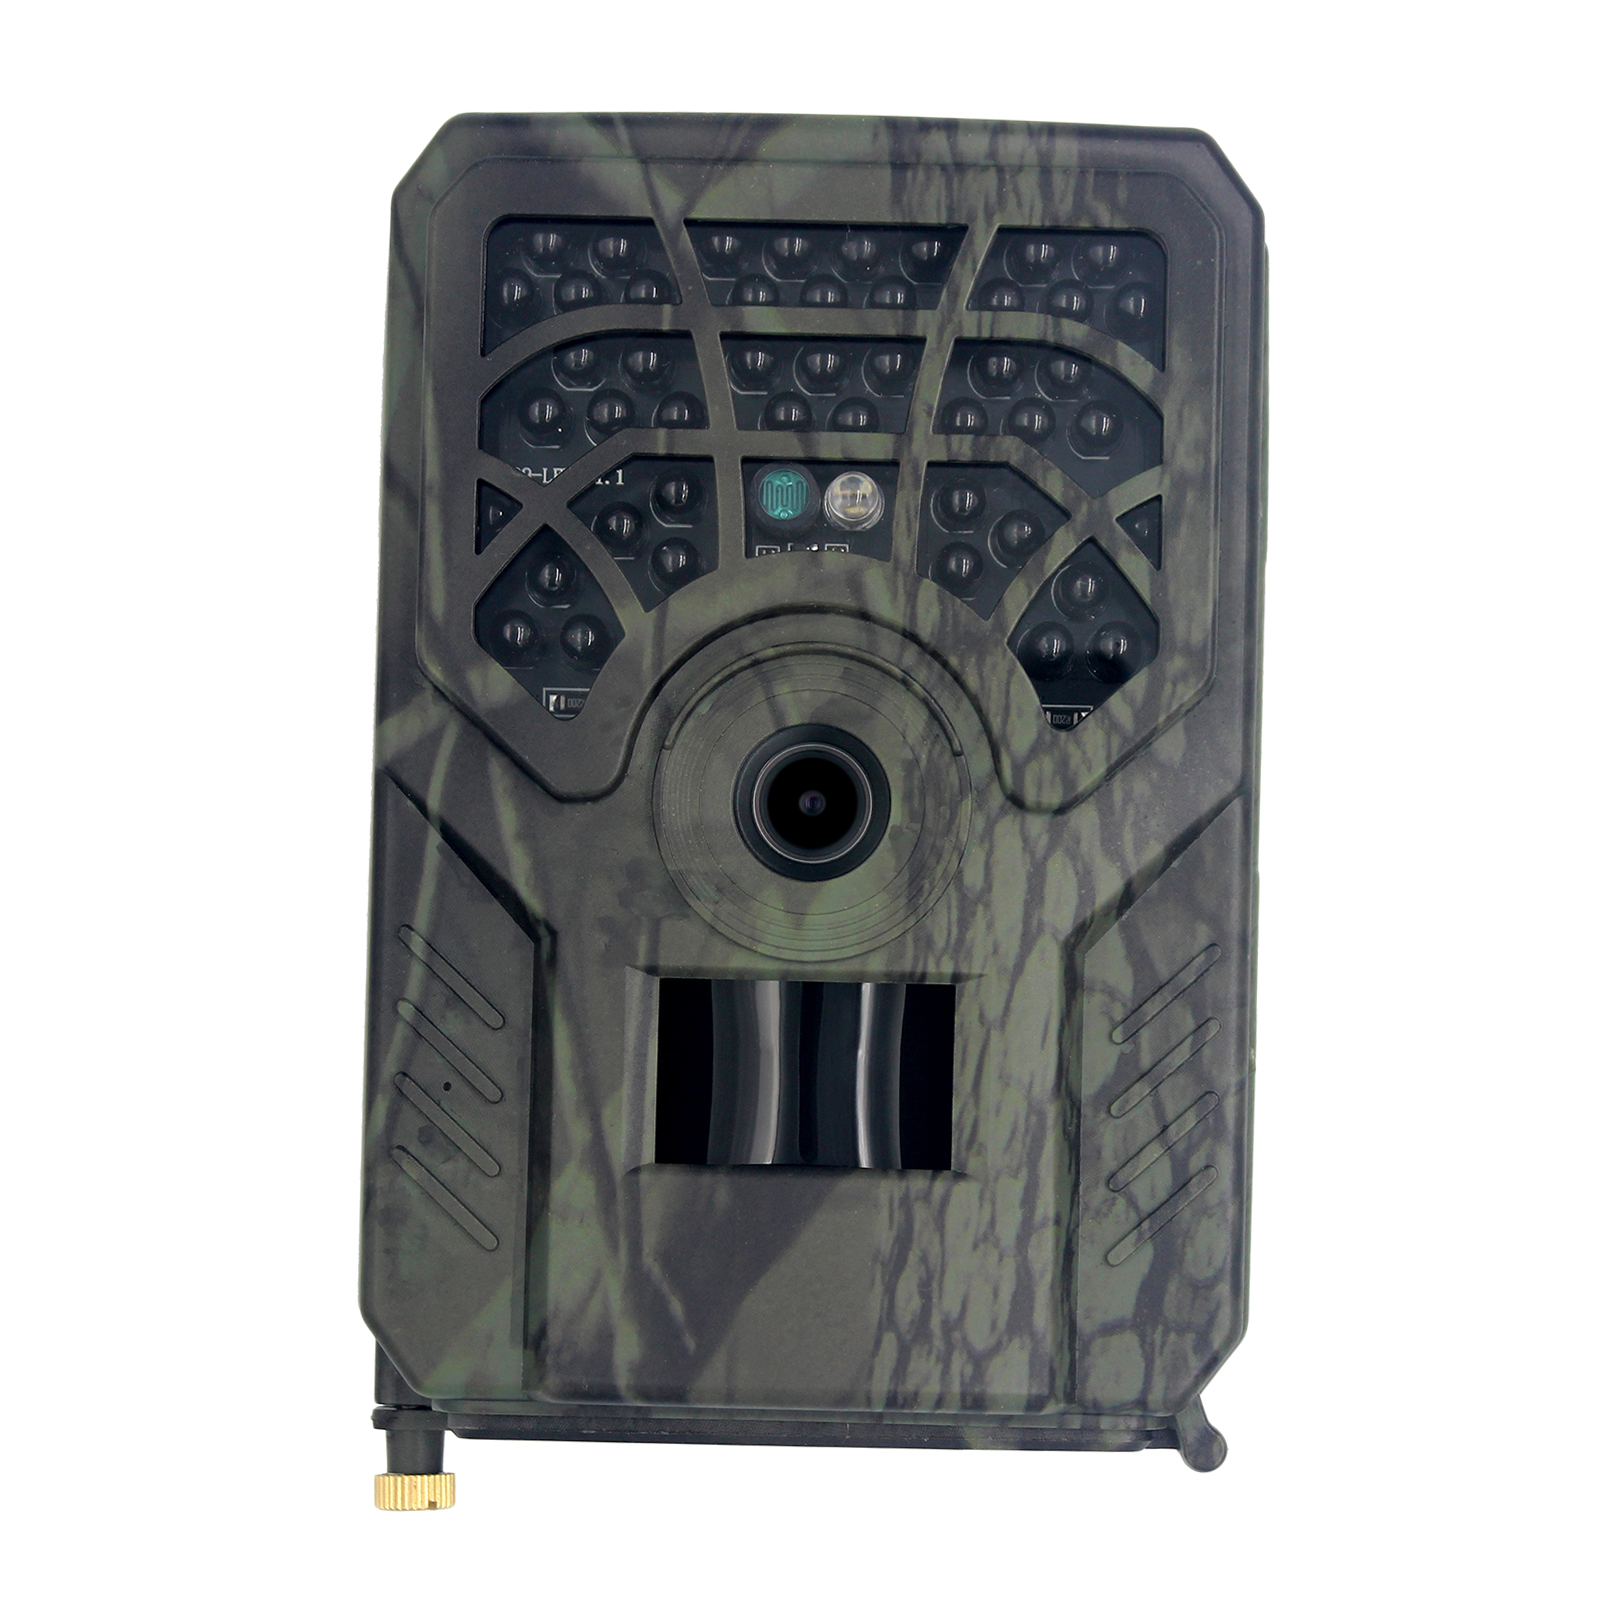 Atualize a câmera PR-300C Trail 720p Night Vision Outdoor Hunting Security Cam com Vida Selvagem à prova d'água IP54 120 ° Caixa de varejo de lente de largura de largura